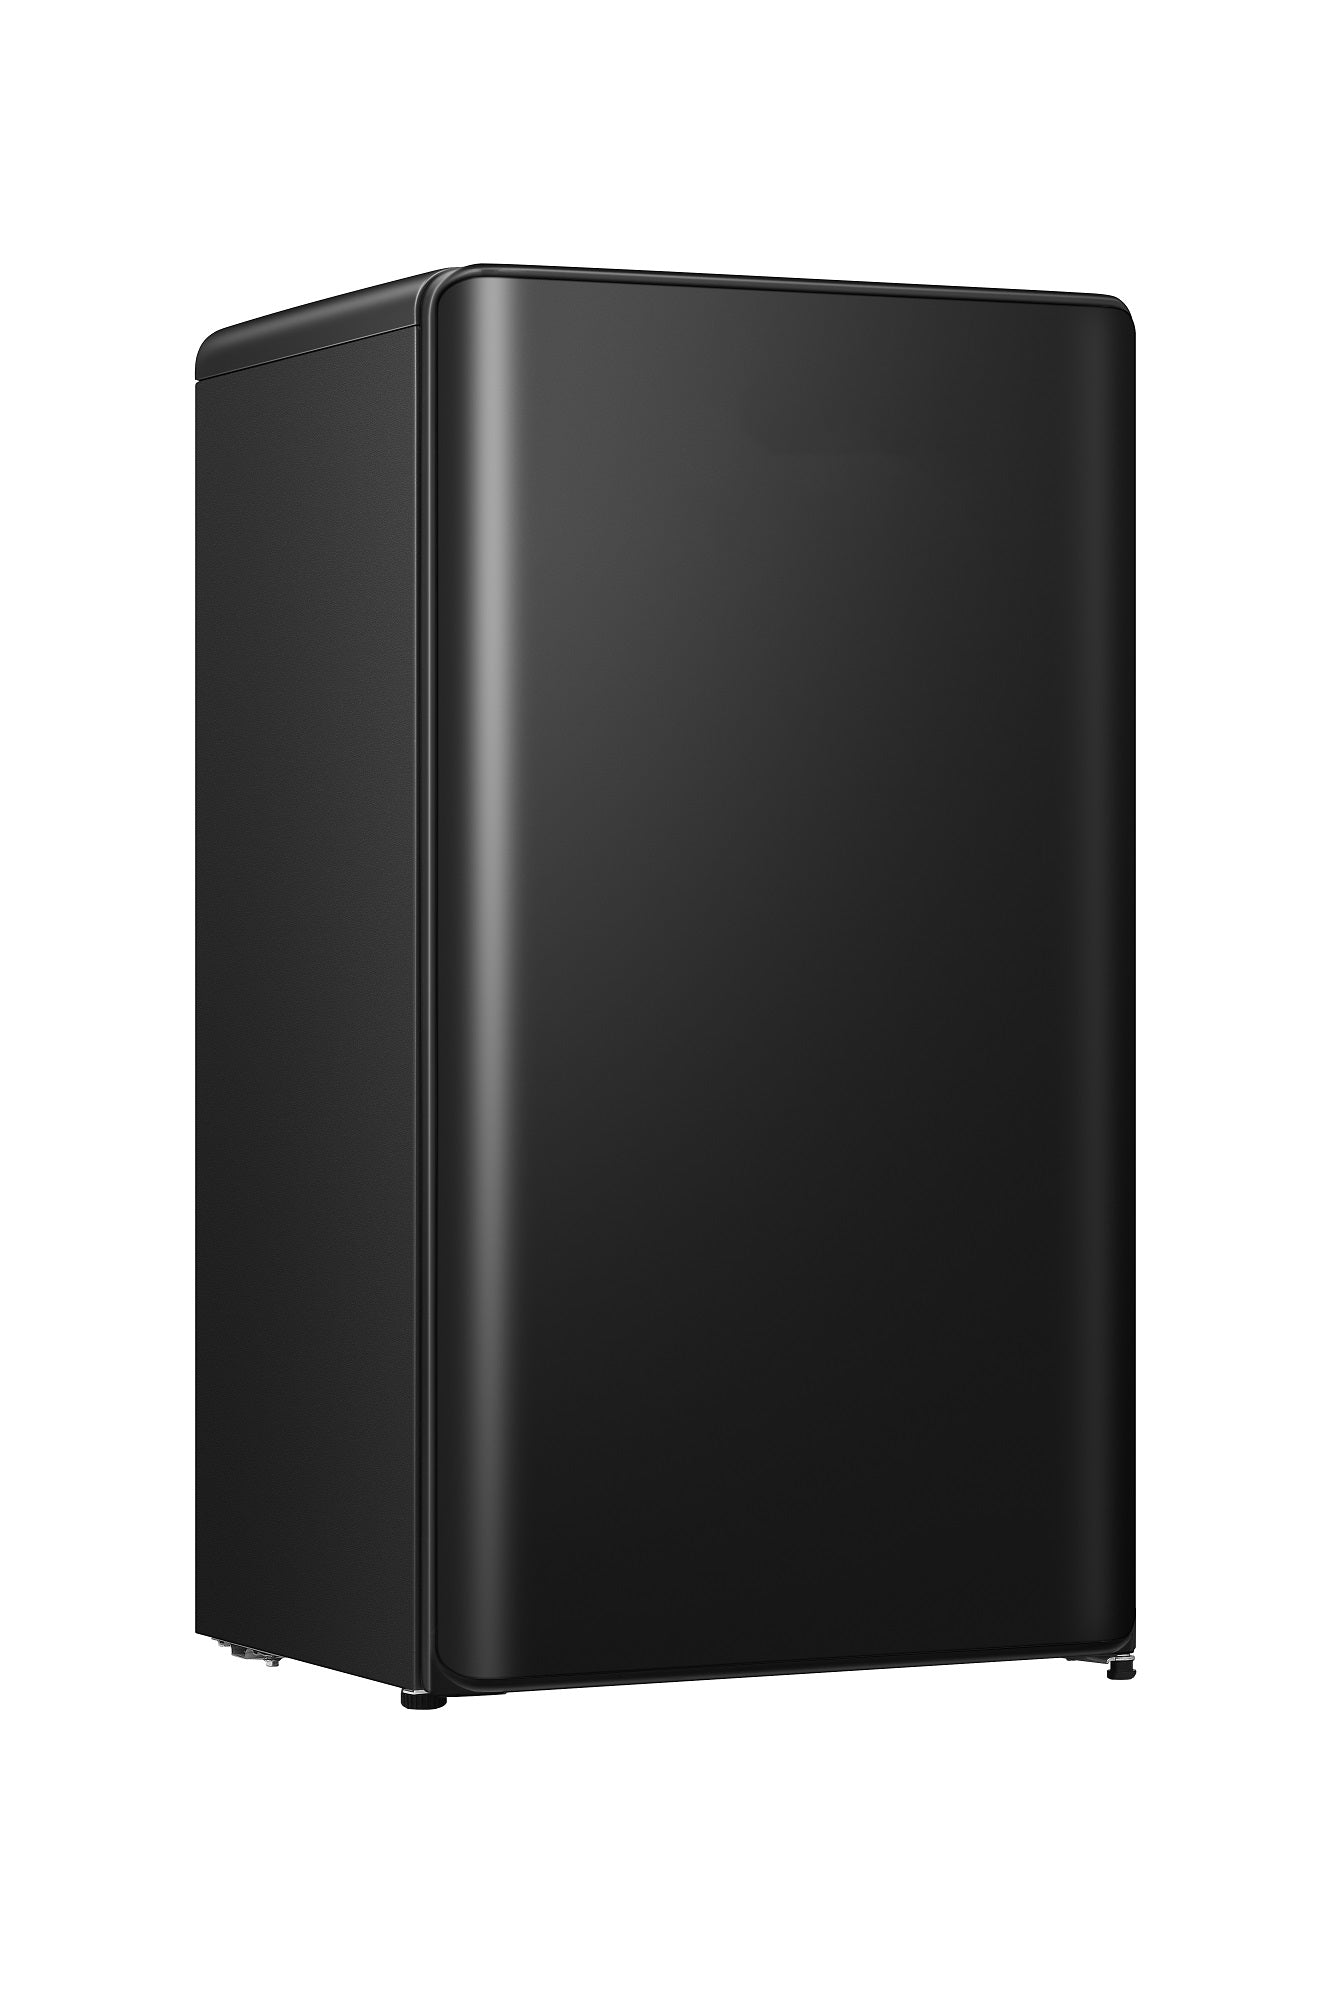 Kelon 120 LTR Single Door Refrigerator Black | in Bahrain | Halabh.com